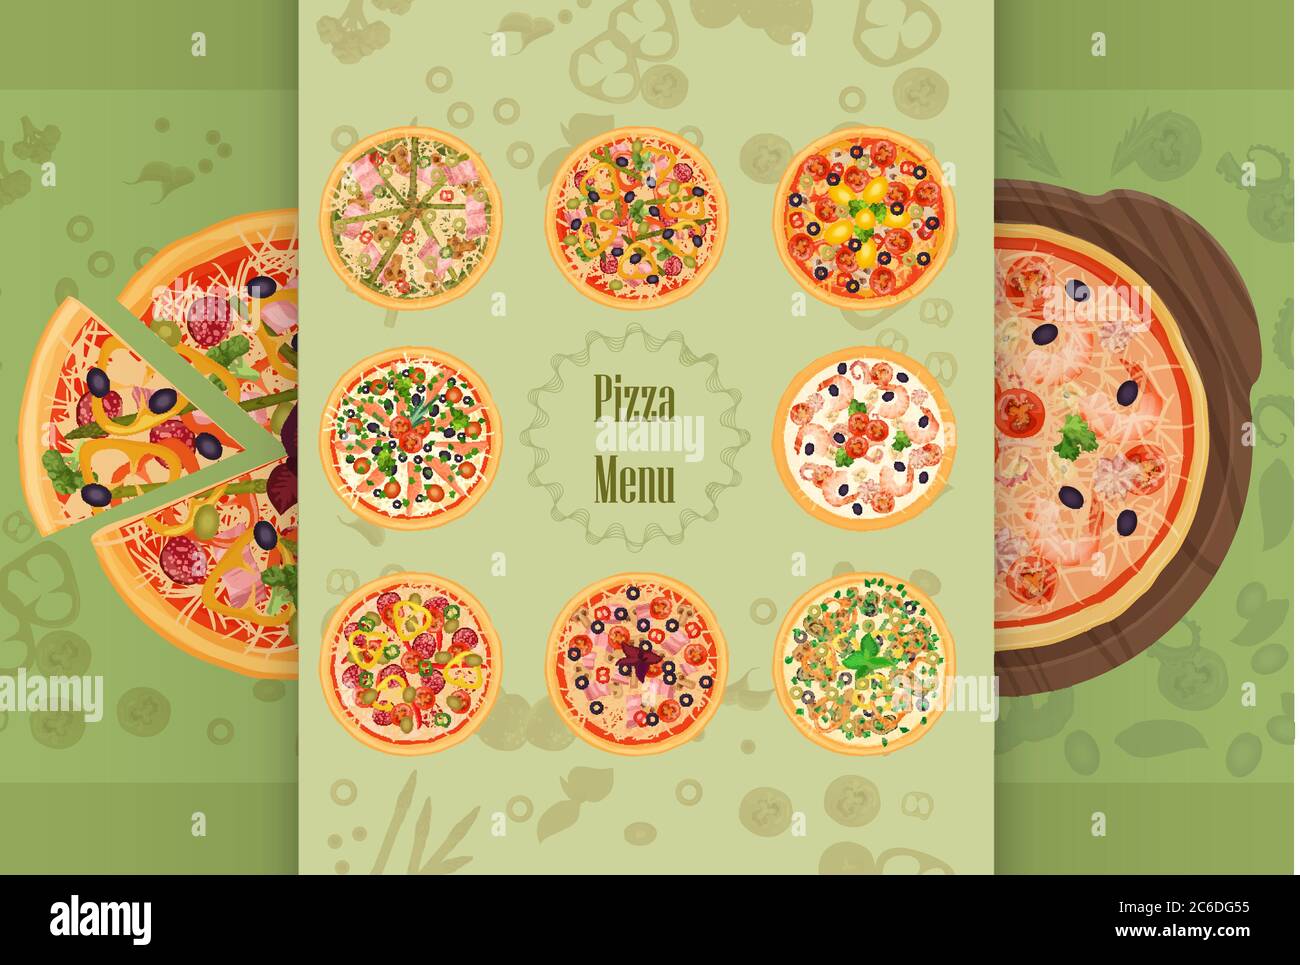 Menu concept du restaurant pizza. Morceau de pizza sur la planche à découper. Illustration du menu pizza Illustration de Vecteur